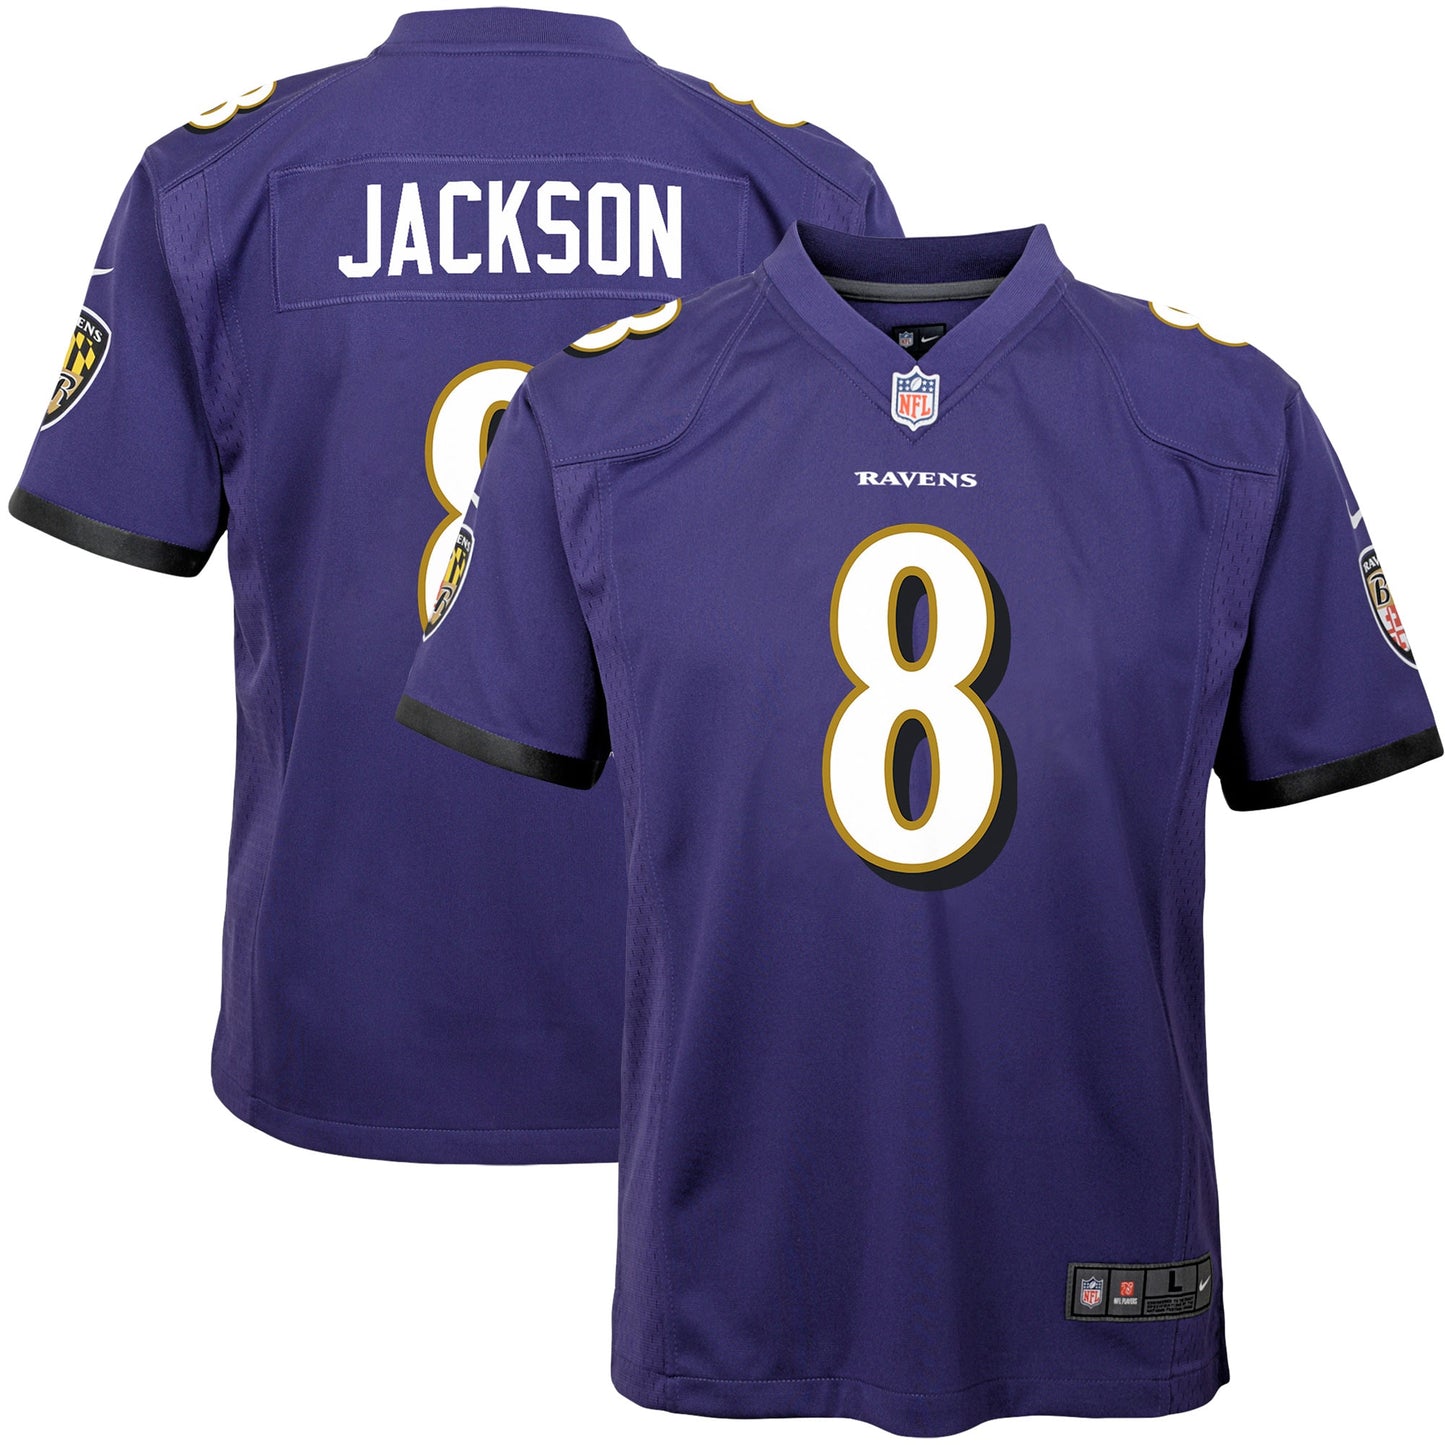 Lamar Jackson Baltimore Ravens Nike Youth Game Jersey - Purple